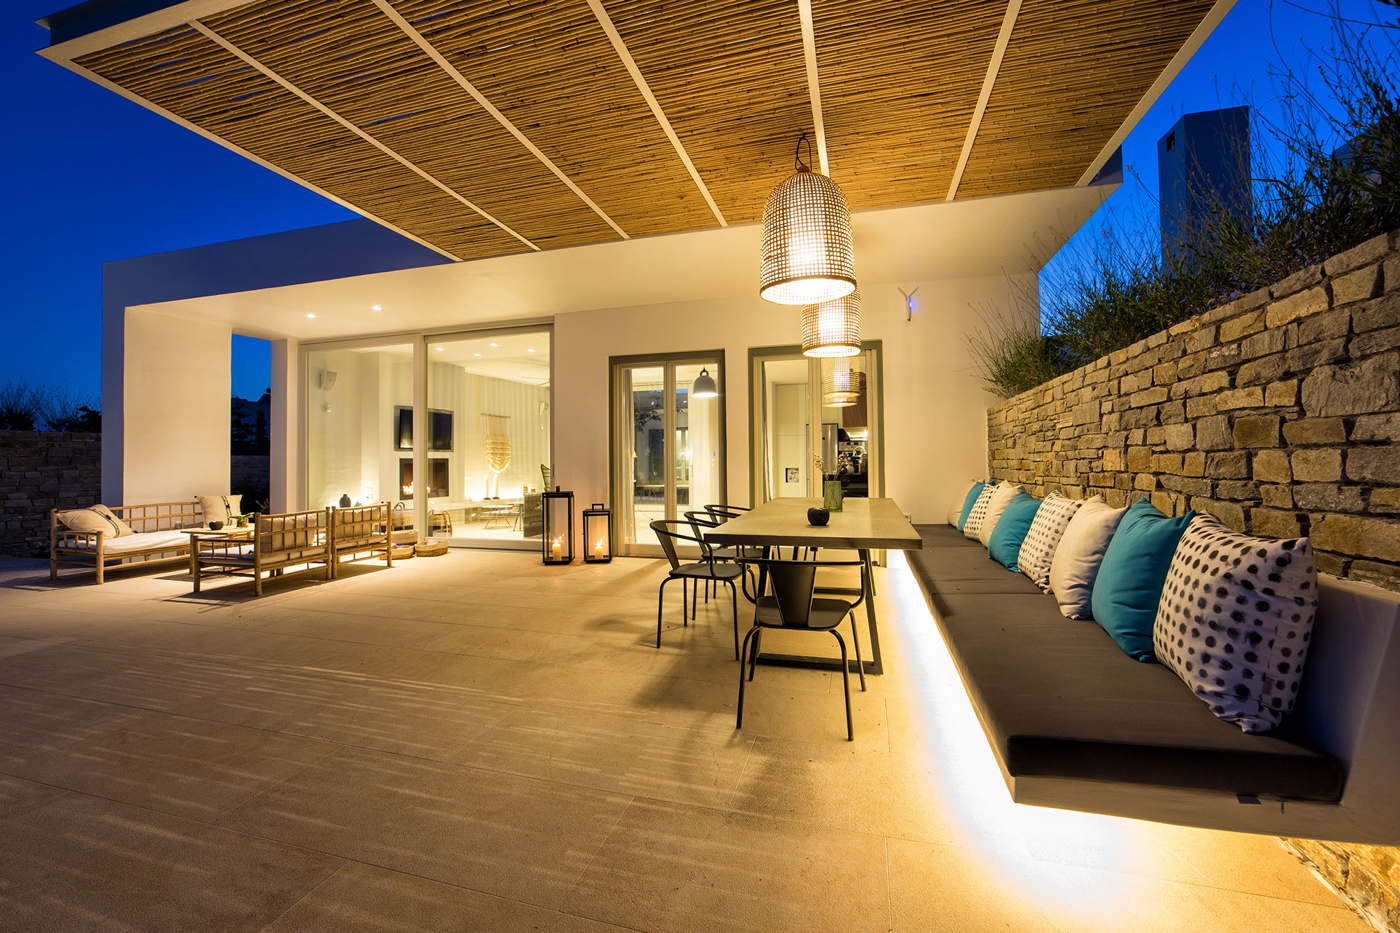 luxury villa-vacation villa in Greece-Cyclades-Paros-Dryos